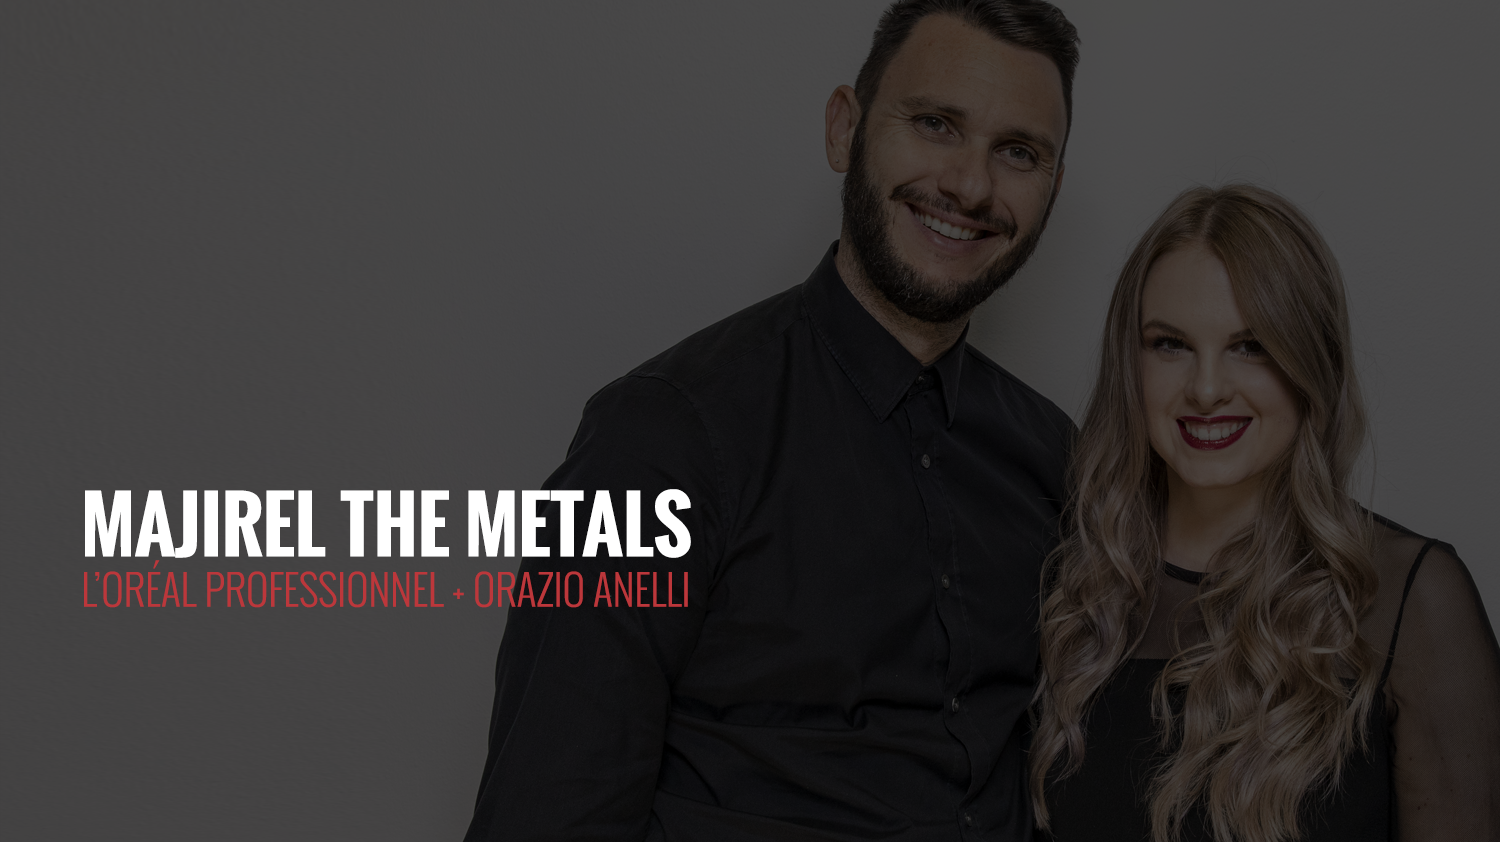 The Metals | L’Oréal Professionnel + Orazio Anelli